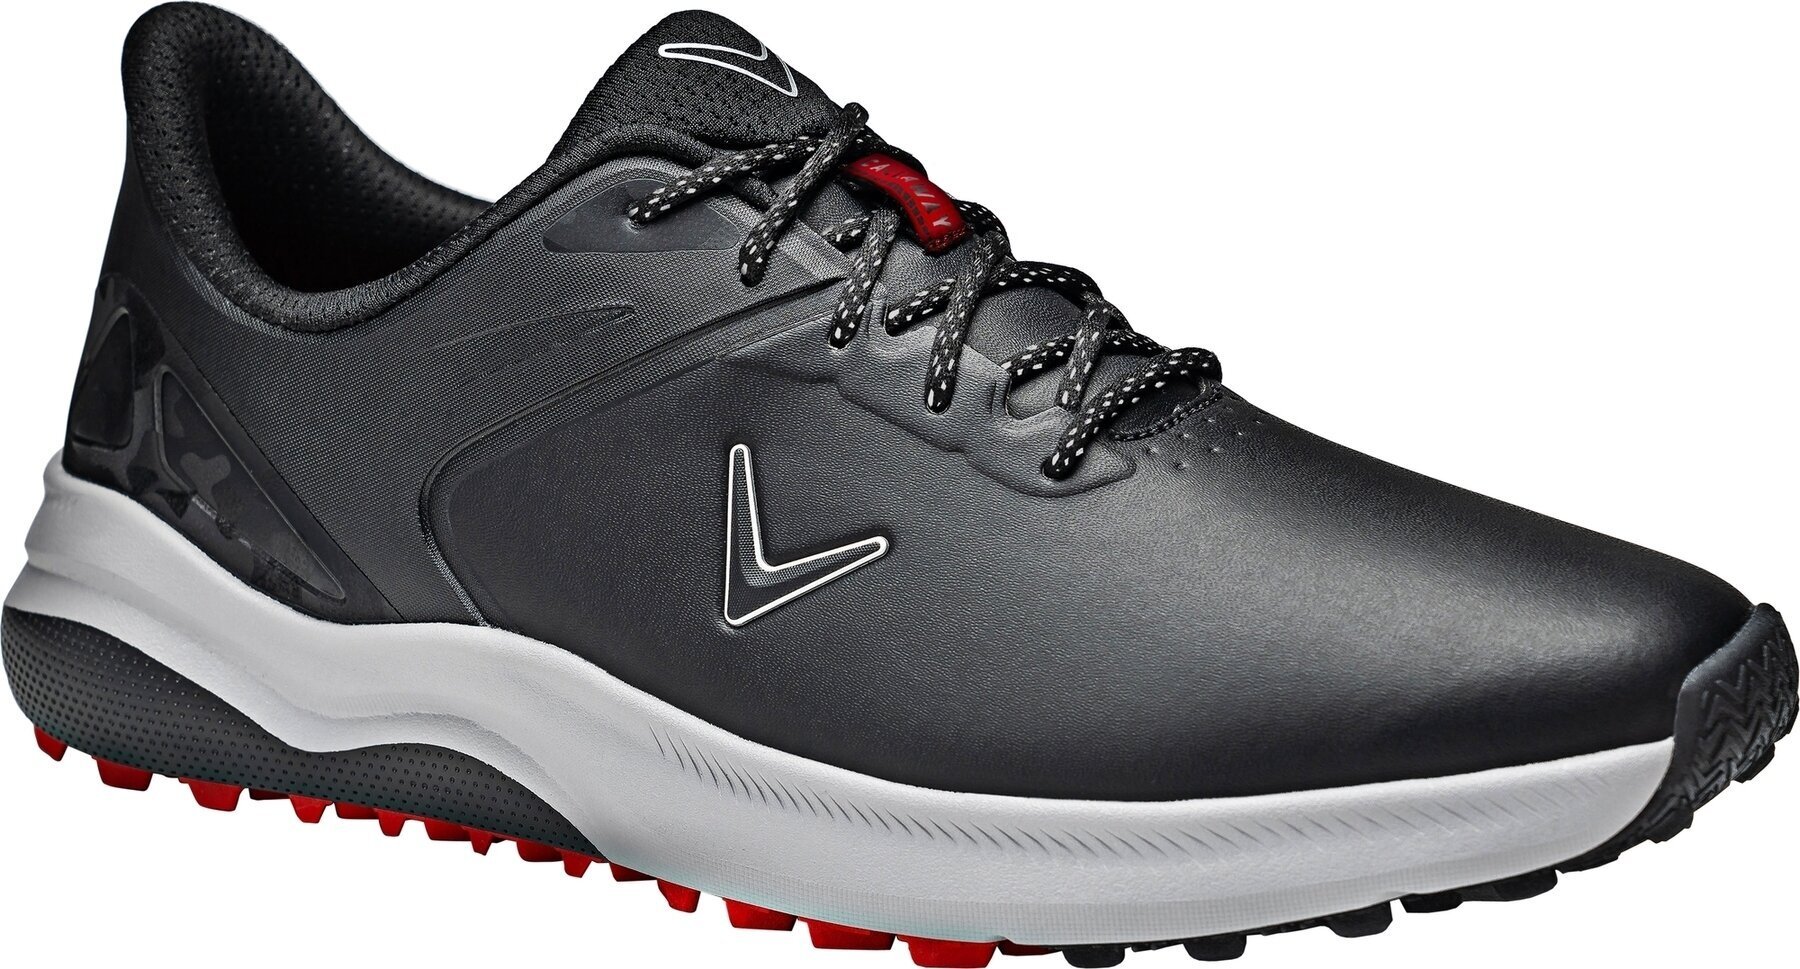 Heren golfschoenen Callaway Lazer Mens Golf Shoes Zwart 40,5